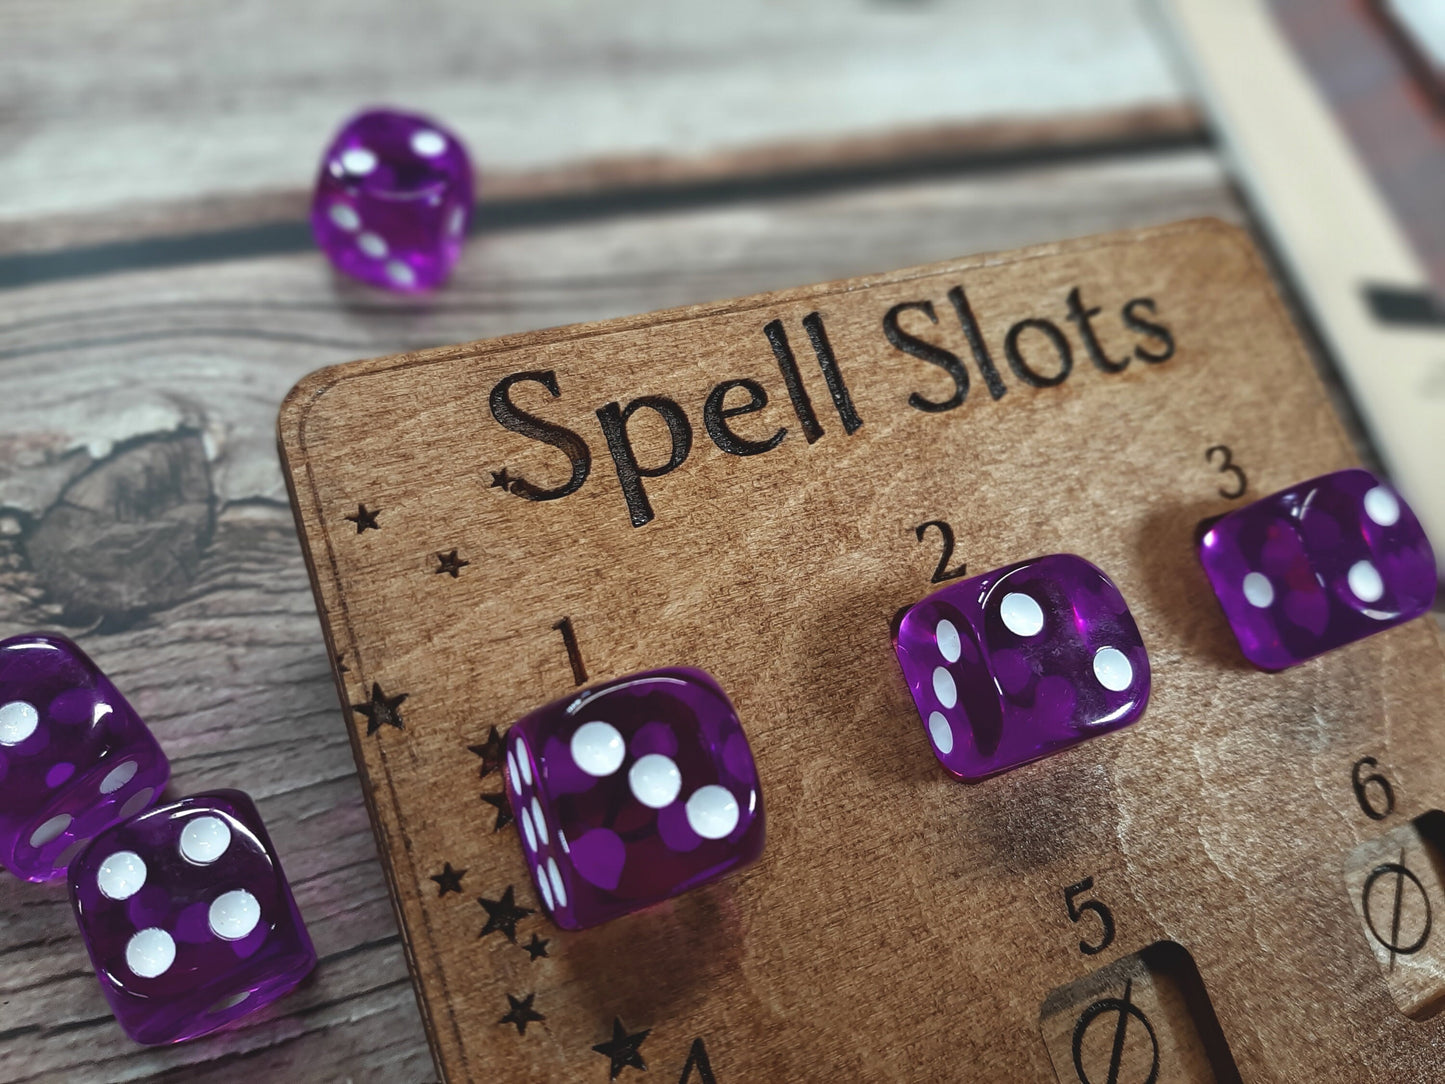 Spell Slot Tracker - RPG Game accessory for spell casting classes - D&D